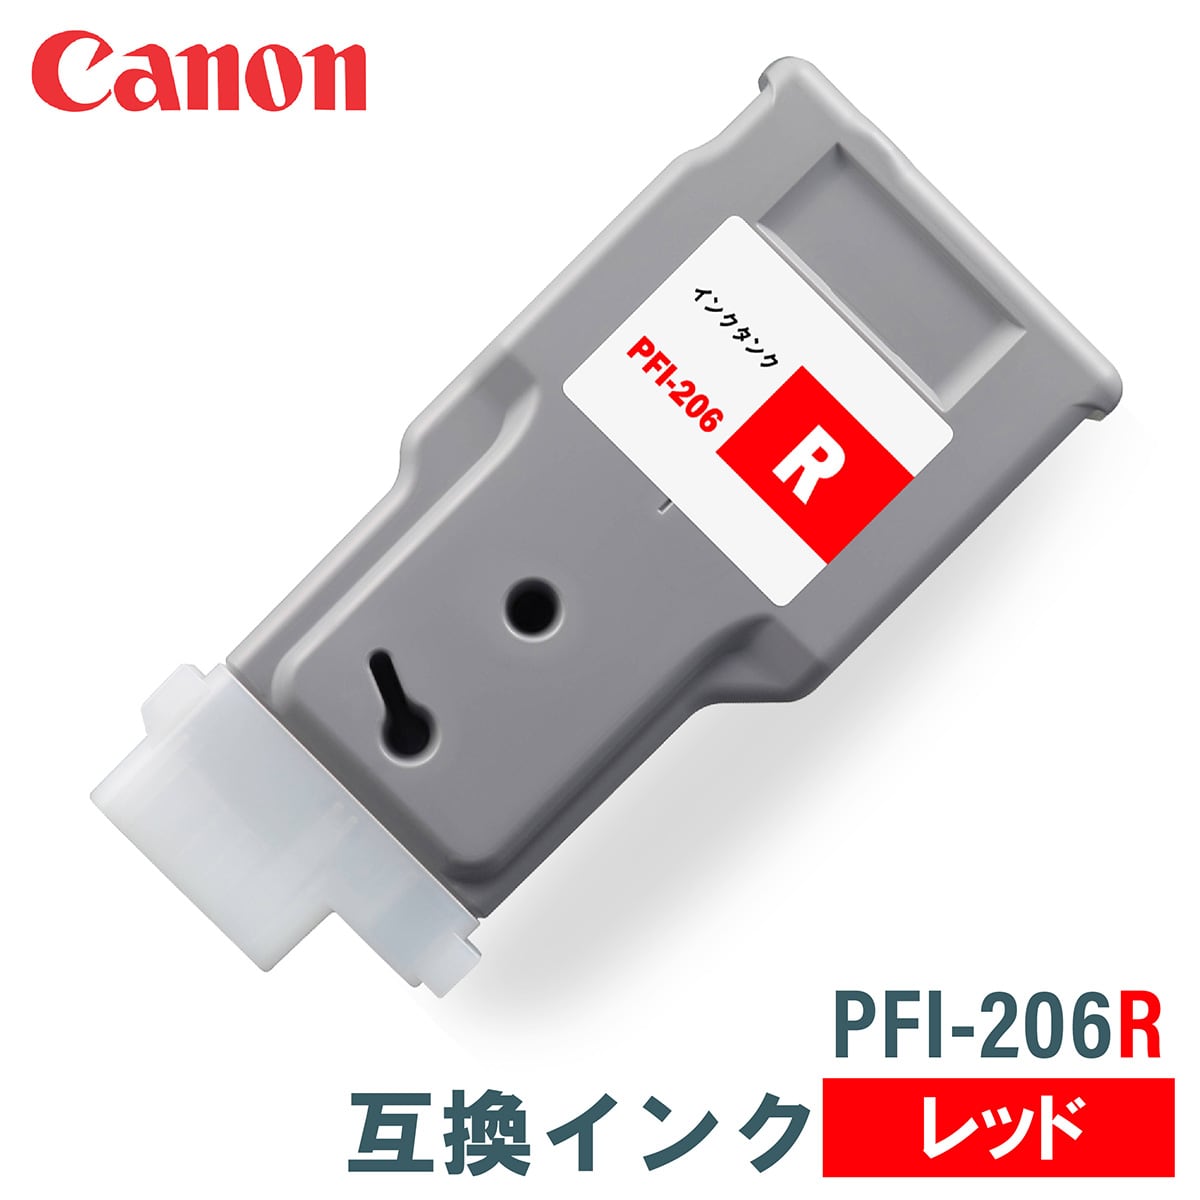 キヤノン 互換インク CANON PFI-206R レッド 300ml 互換インク、ロール紙販売のPRINKS(プリンクス)